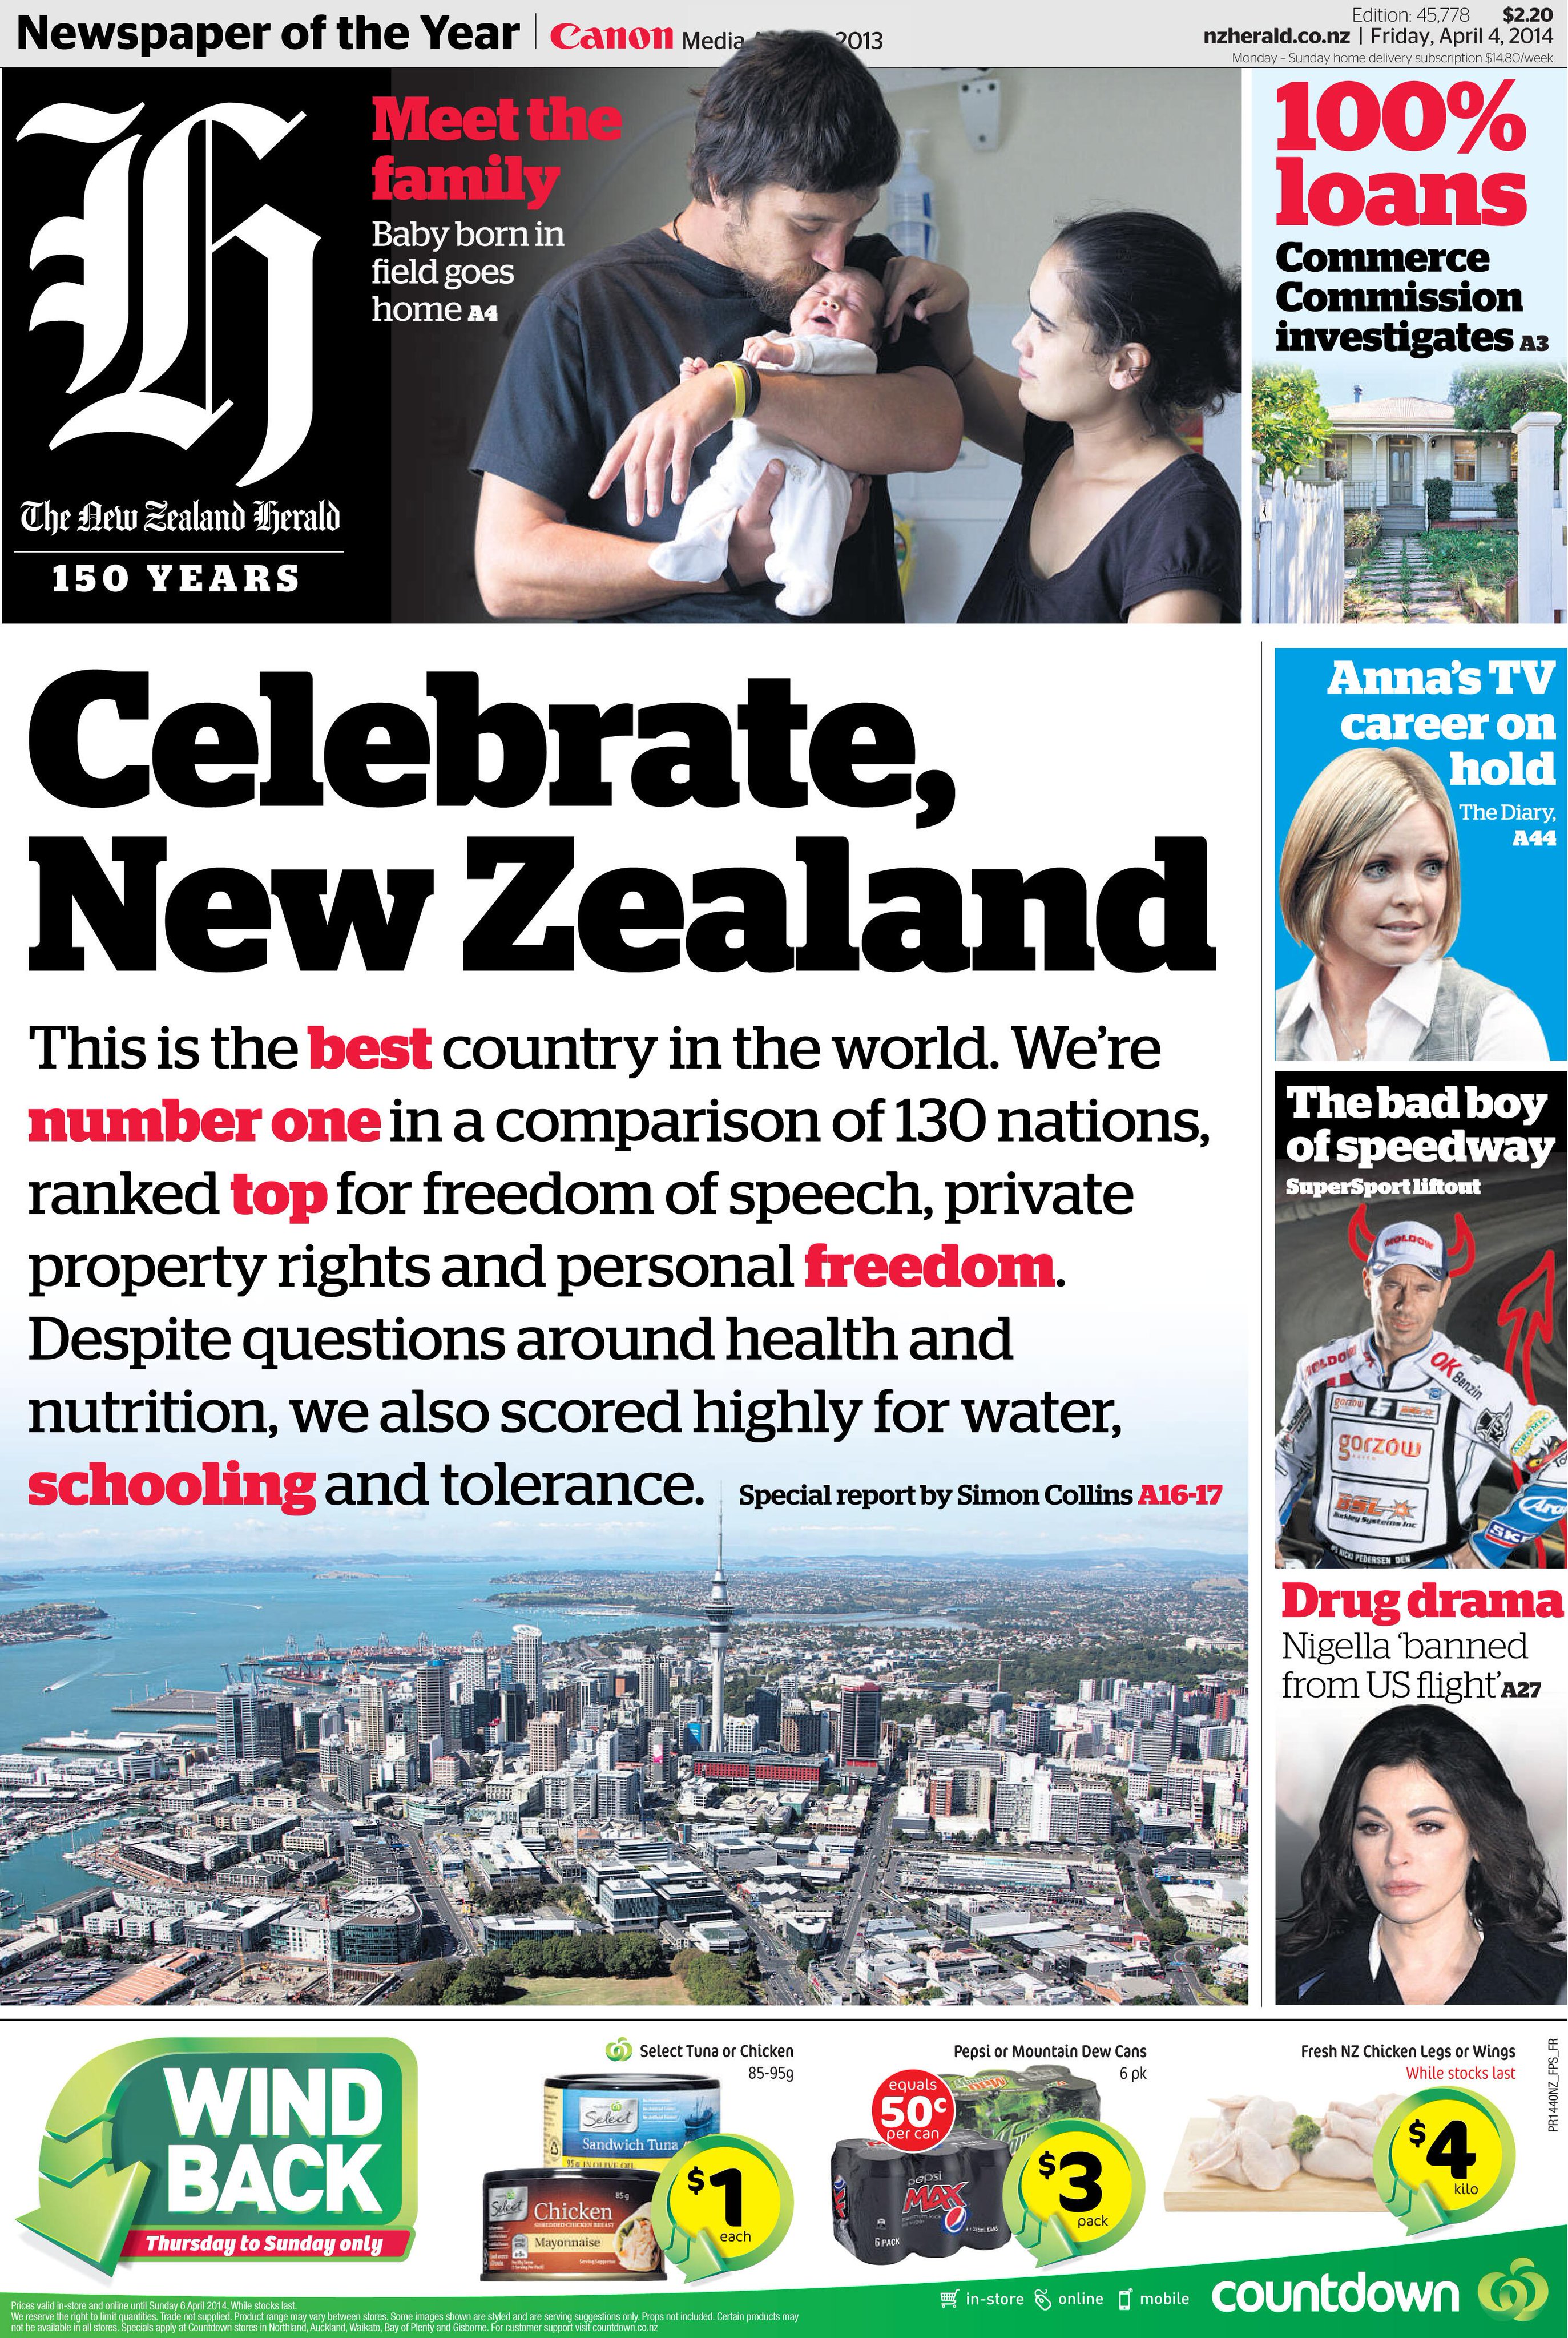 Herald nz New Zealand